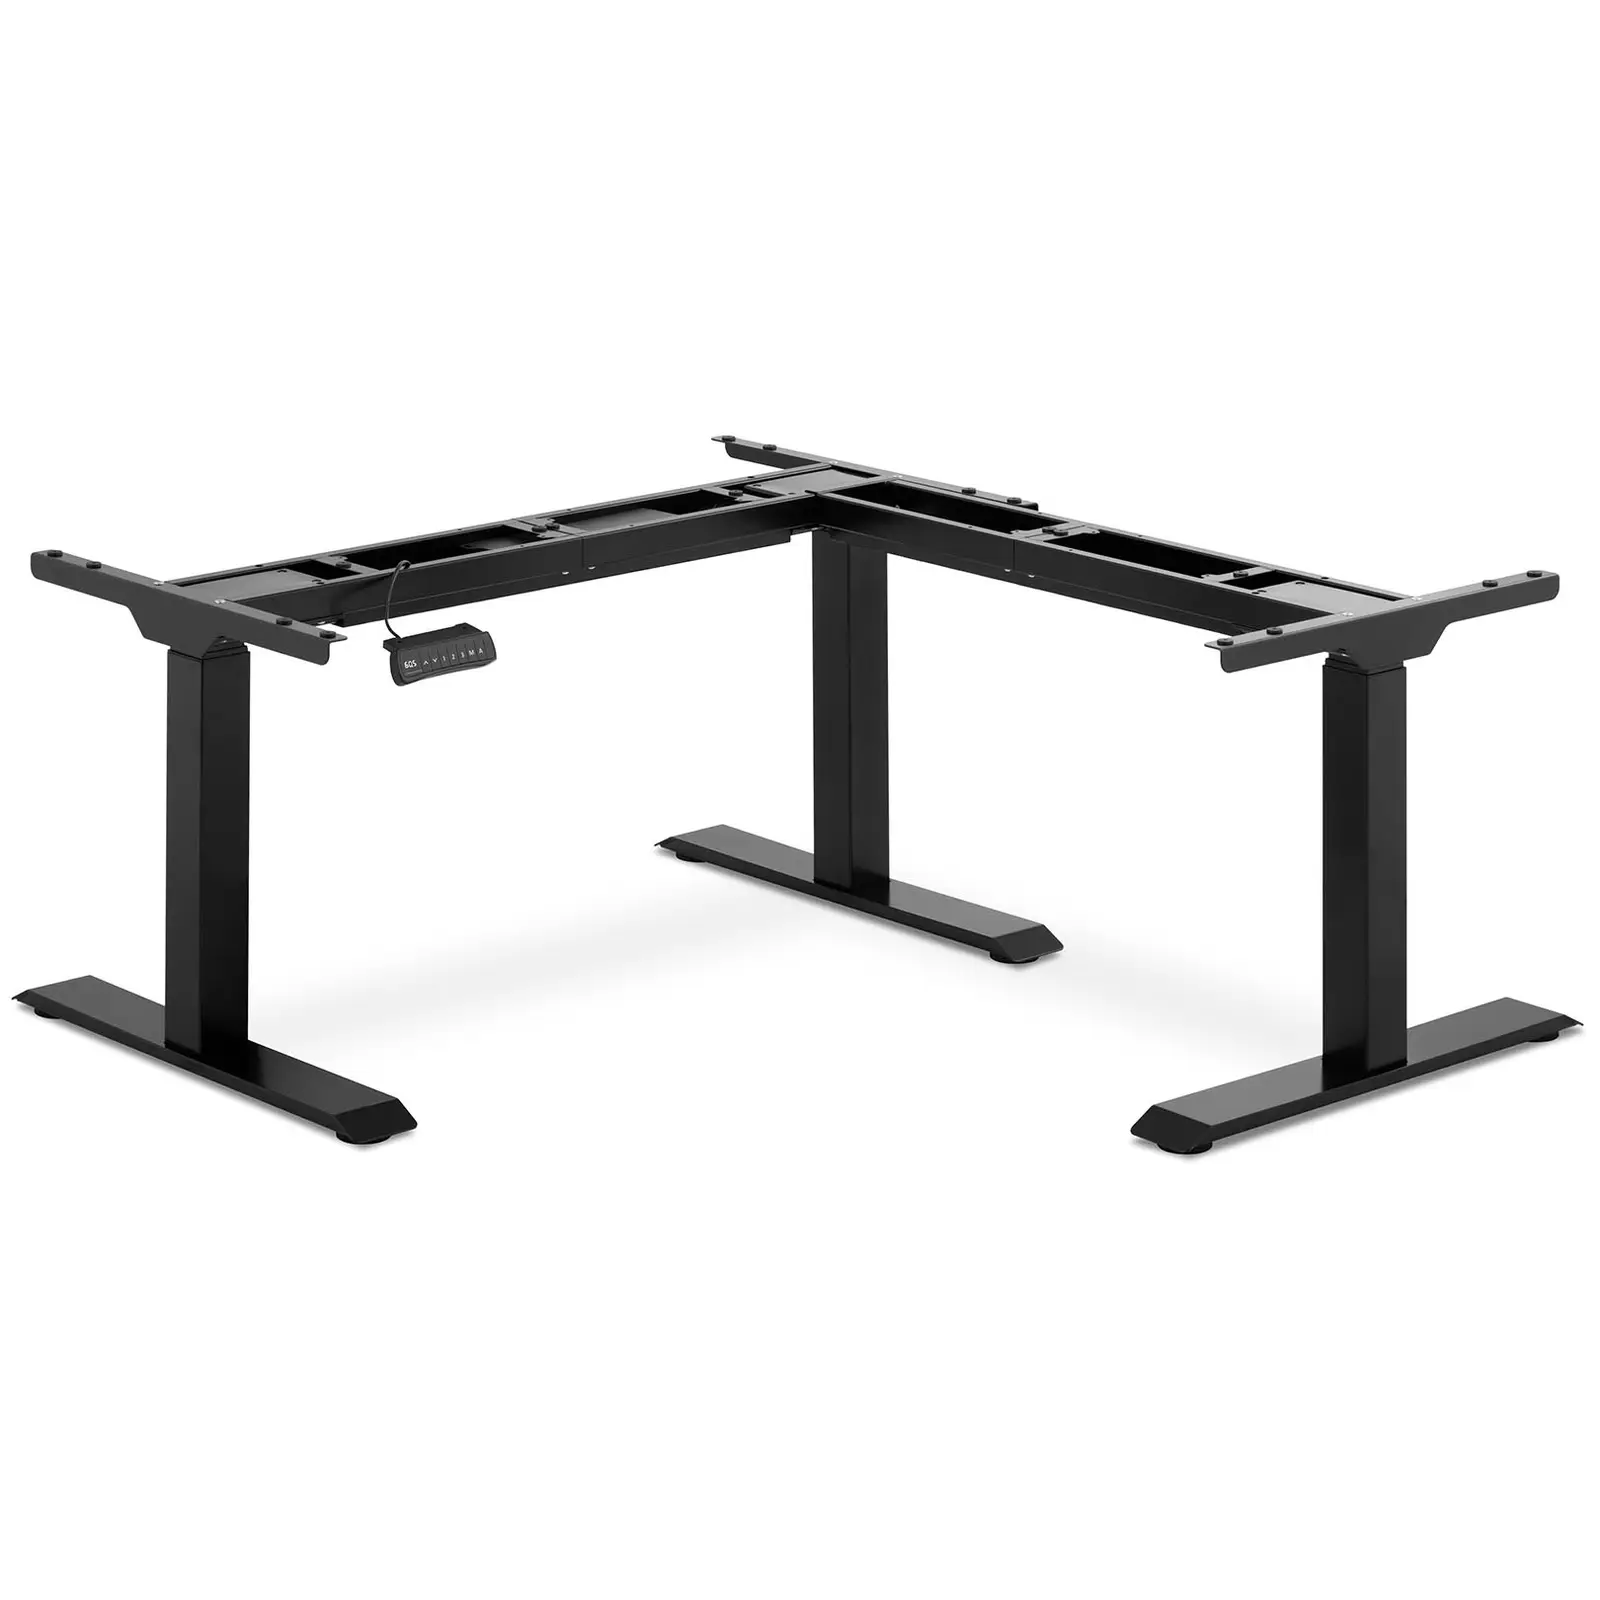 Sarok asztal keret - magasság: 58–123 cm - szélesség: 90–150 cm (balra) / 110–190 cm (jobbra) - szög: 90° - 150 kg